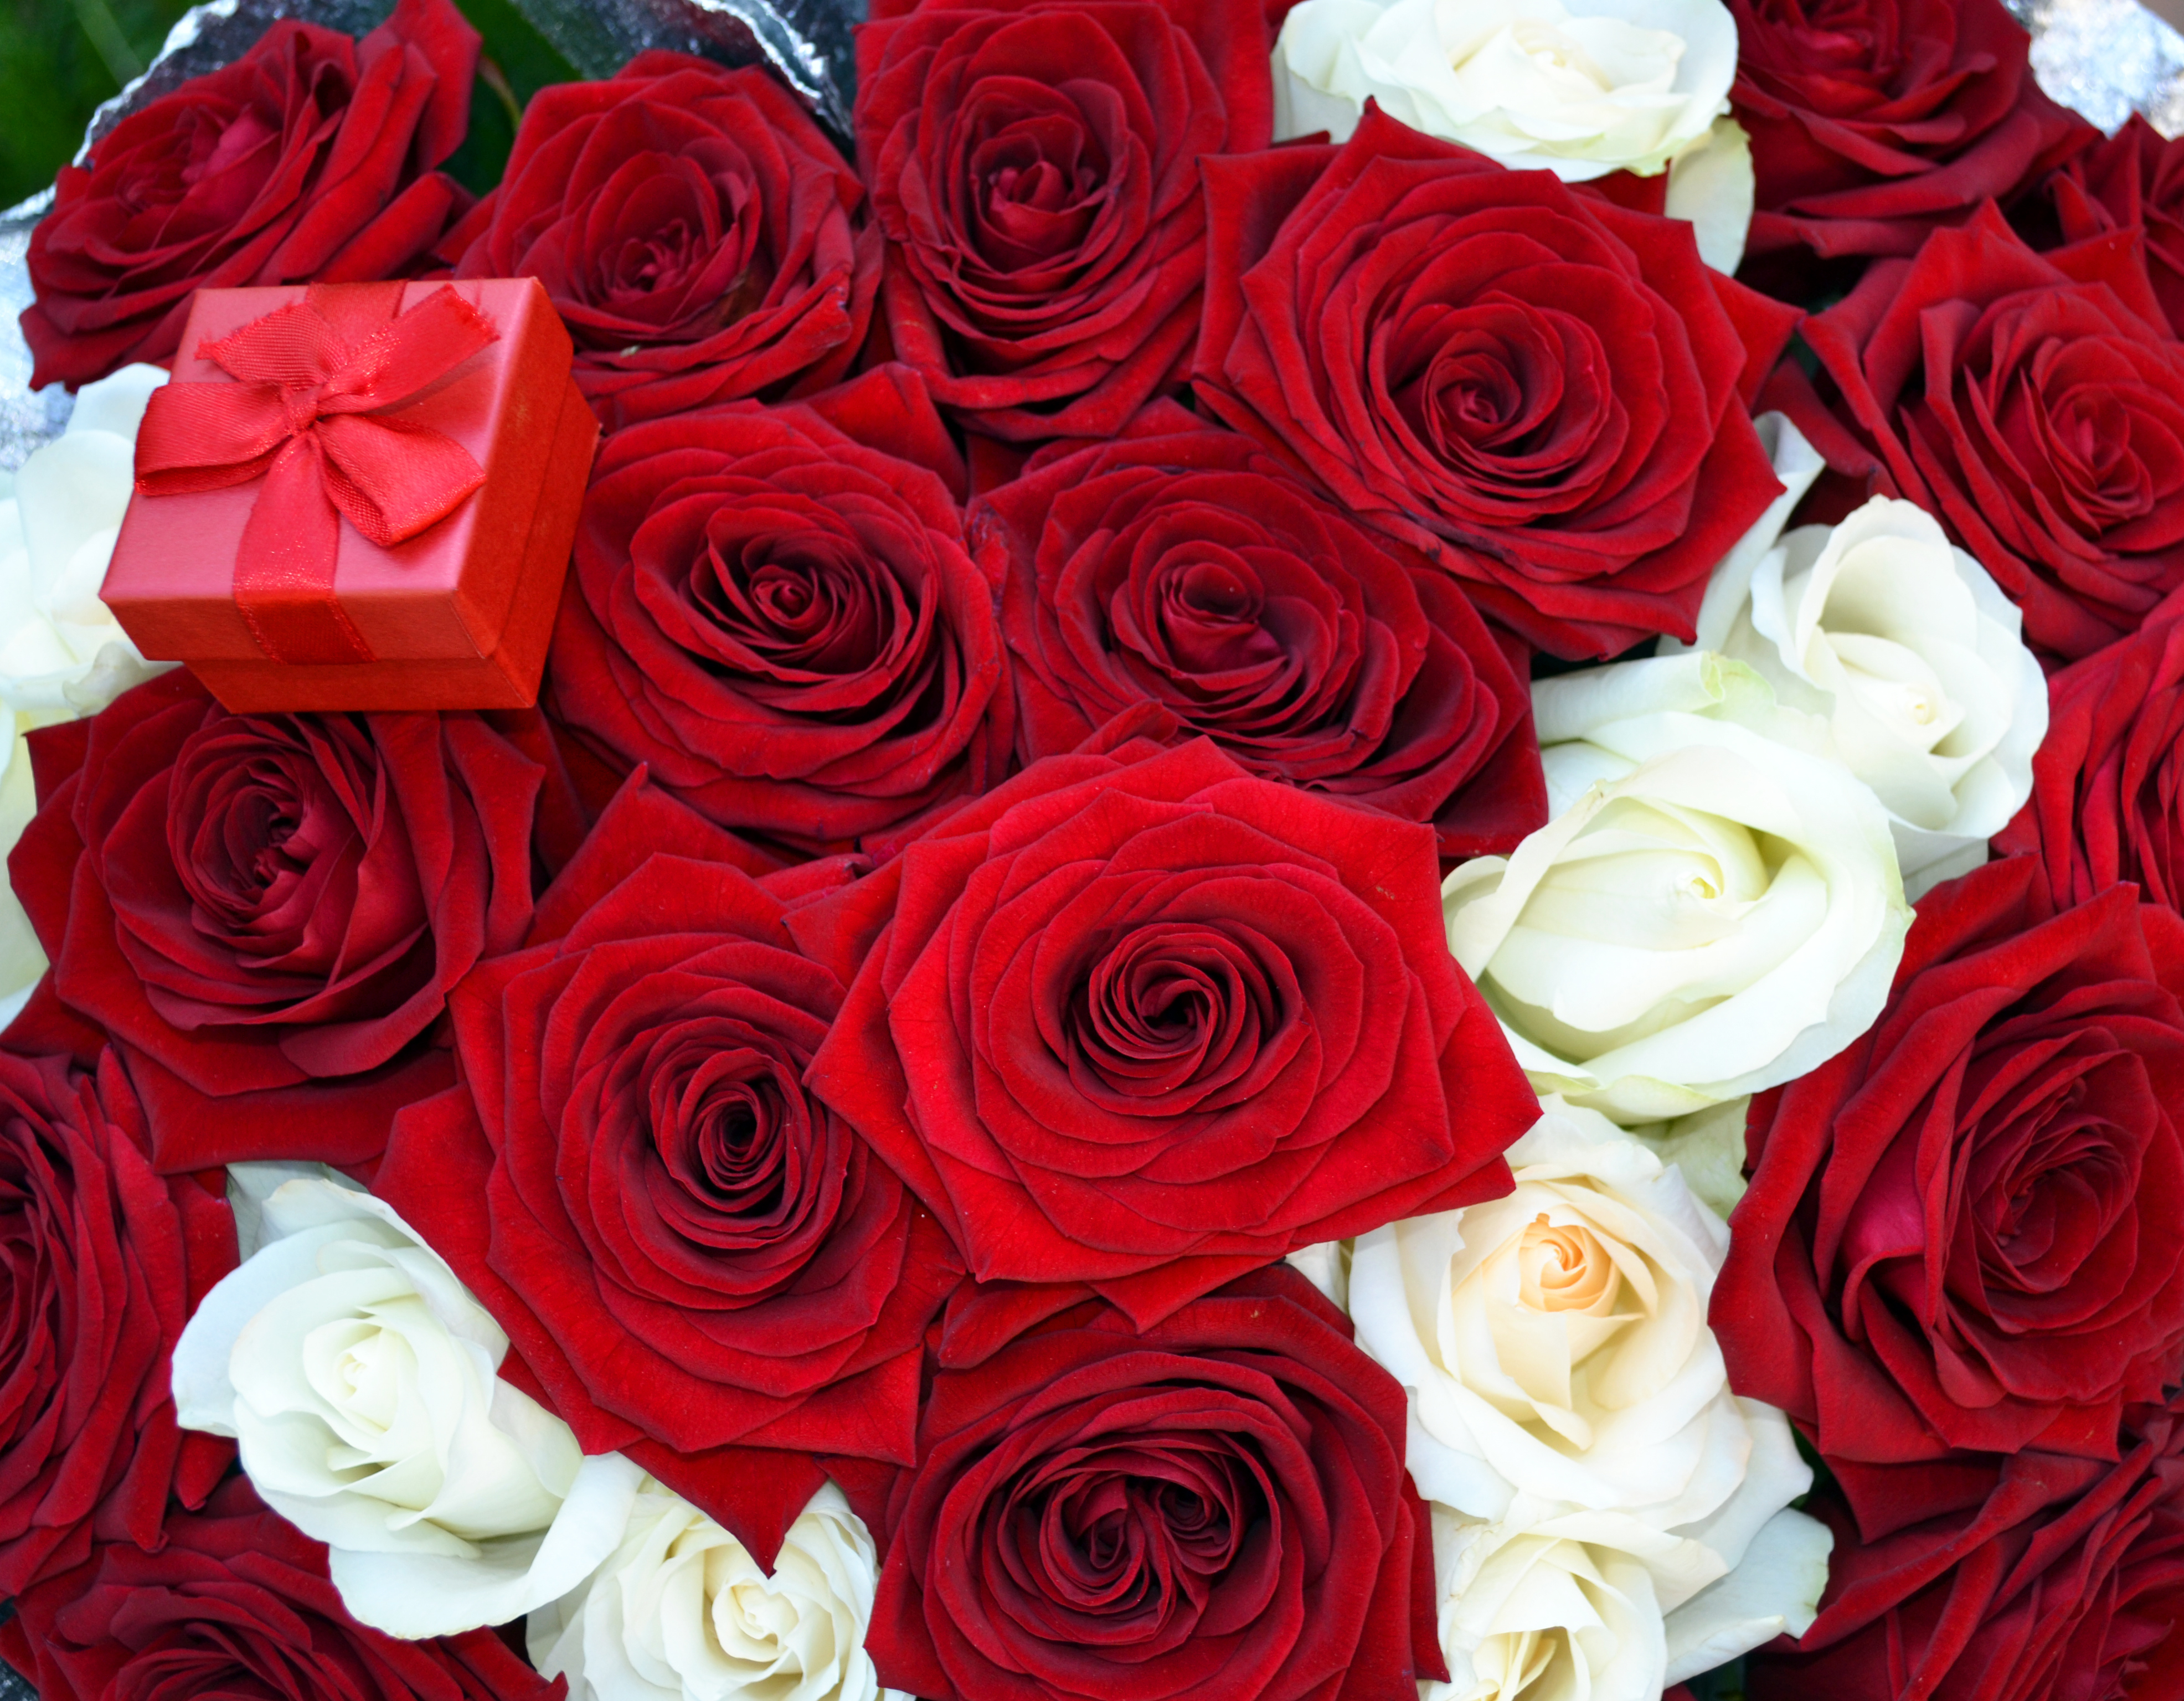 Видео красивых роз. Красивый букет роз. Шикарный букет роз. Красивый букет красных роз.